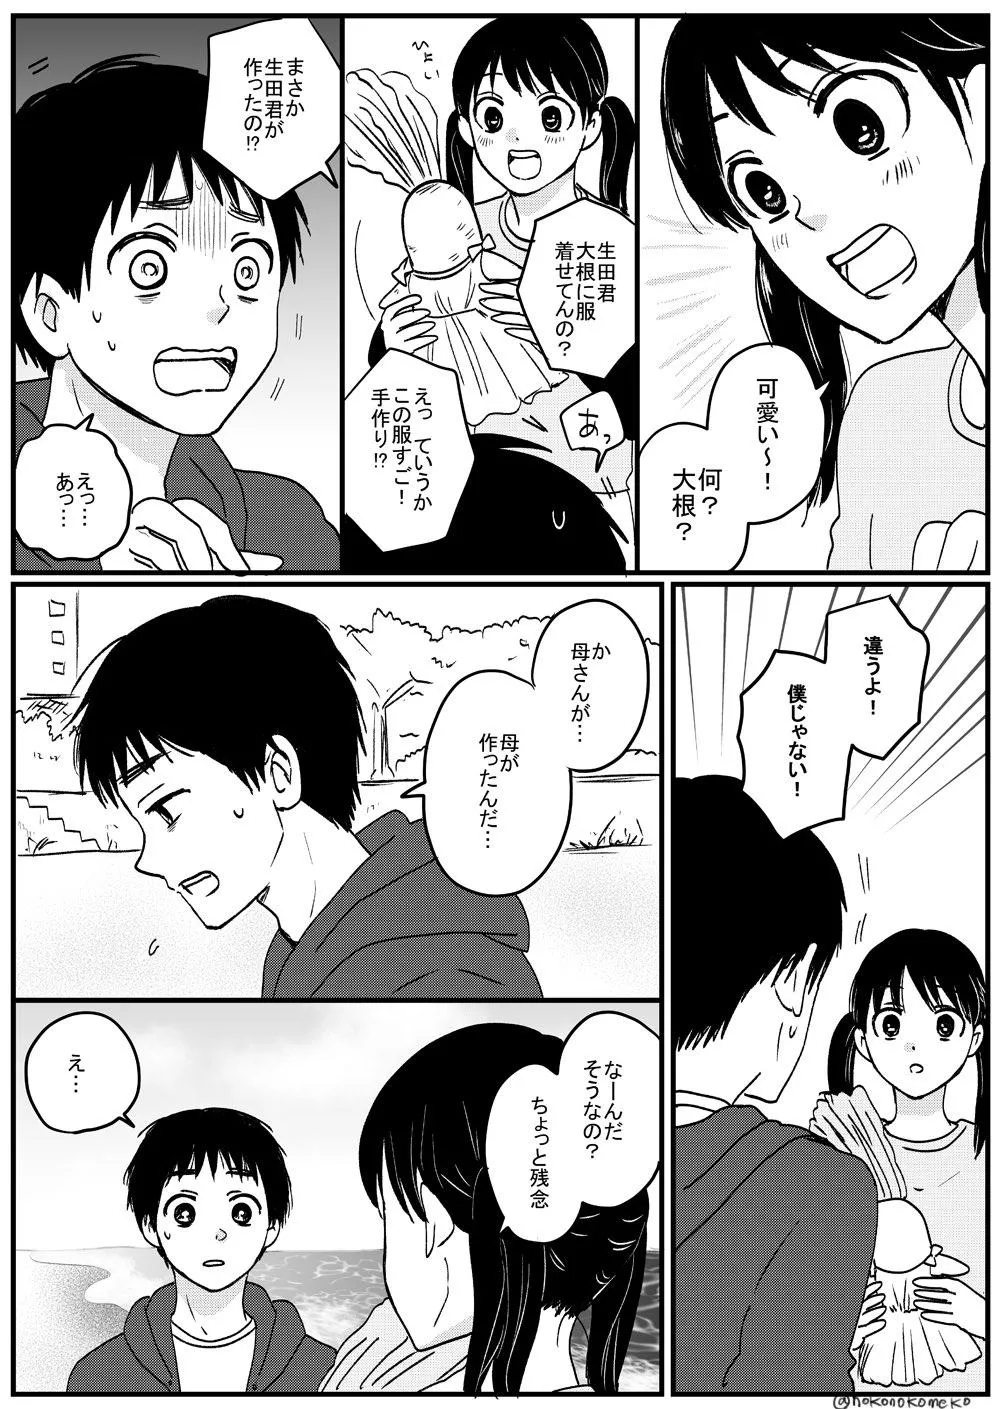 『喋る大根と少年が出会ってツイッターデビューする漫画』14